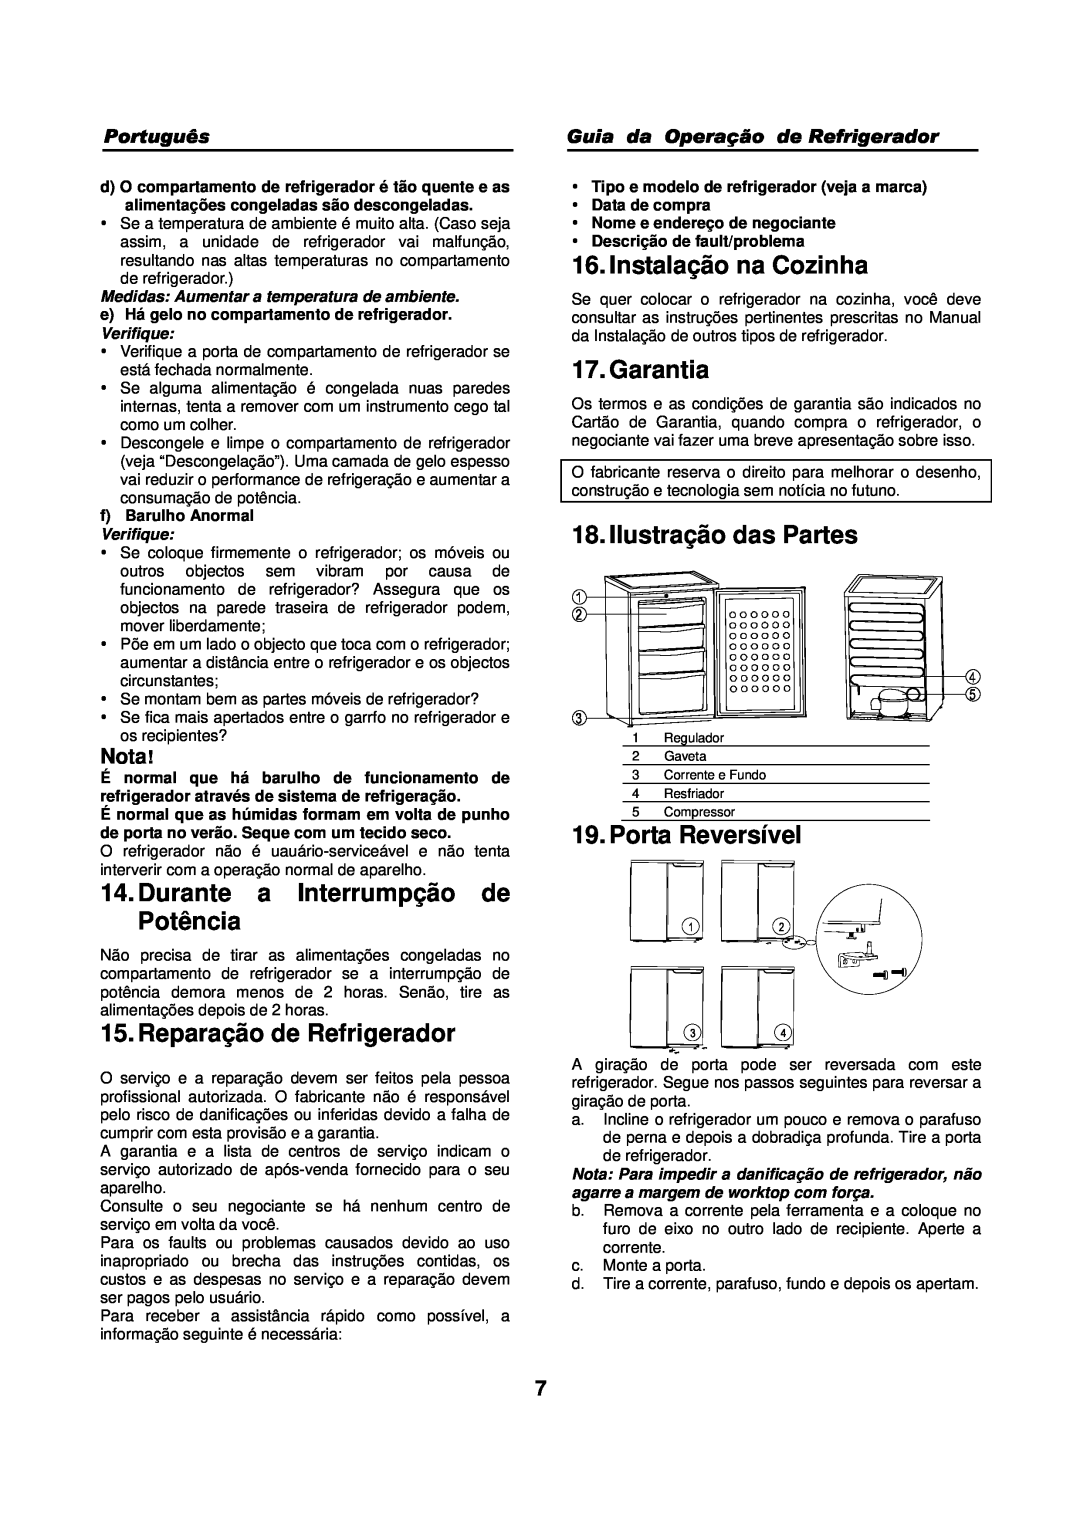 Haier HFN-136 manual Durante a Interrumpção de Potência, Reparação de Refrigerador, Instalação na Cozinha, Garantia, Nota 